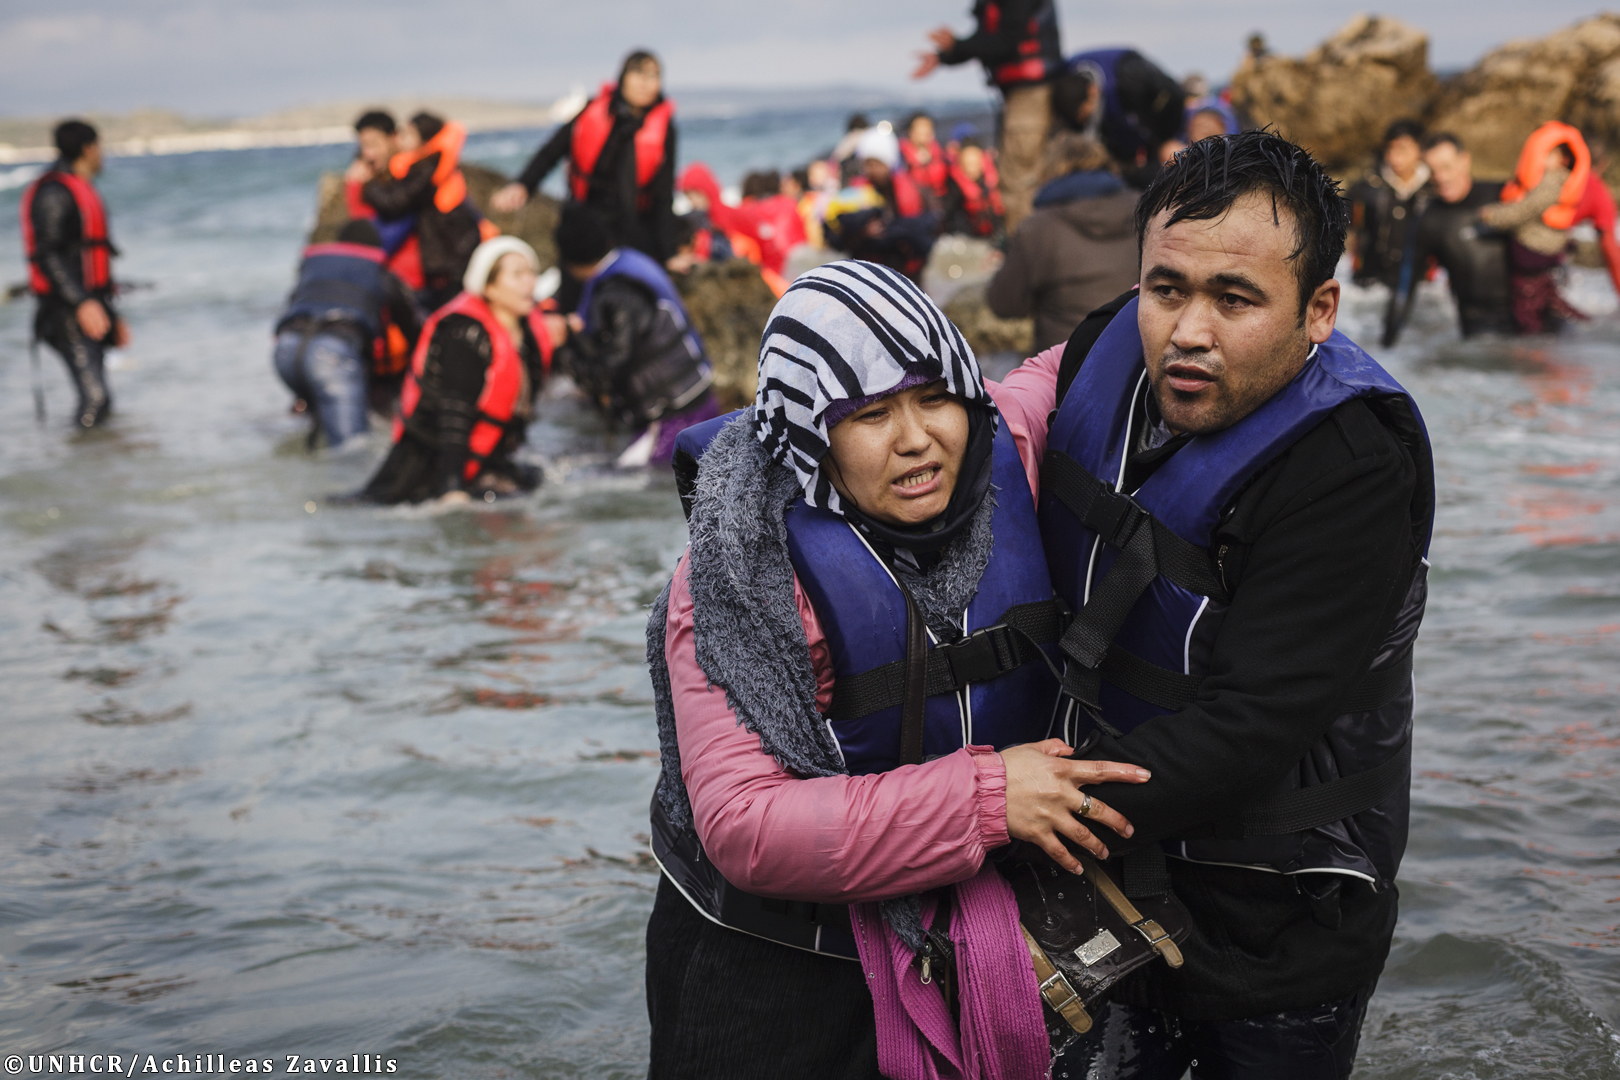 Photo by UNHCR/Achilleas Zavallis